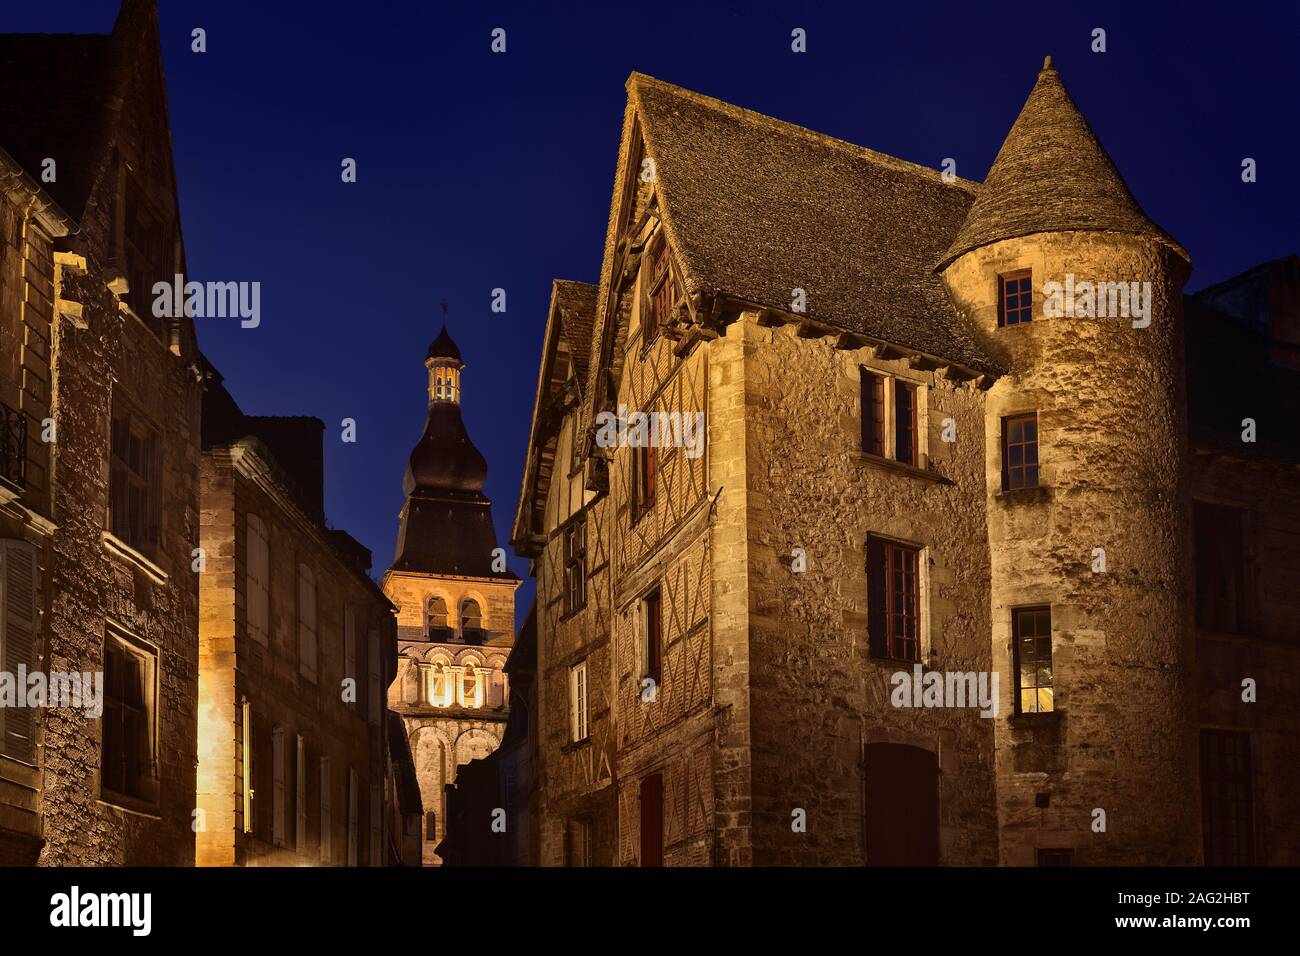 Crépuscule paysage de vieilles maisons historiques sur les rues d'une ville médiévale de Sarlat dans le sud de la France. Sarlat la Caneda, Dordogne, Aquitaine travel Banque D'Images